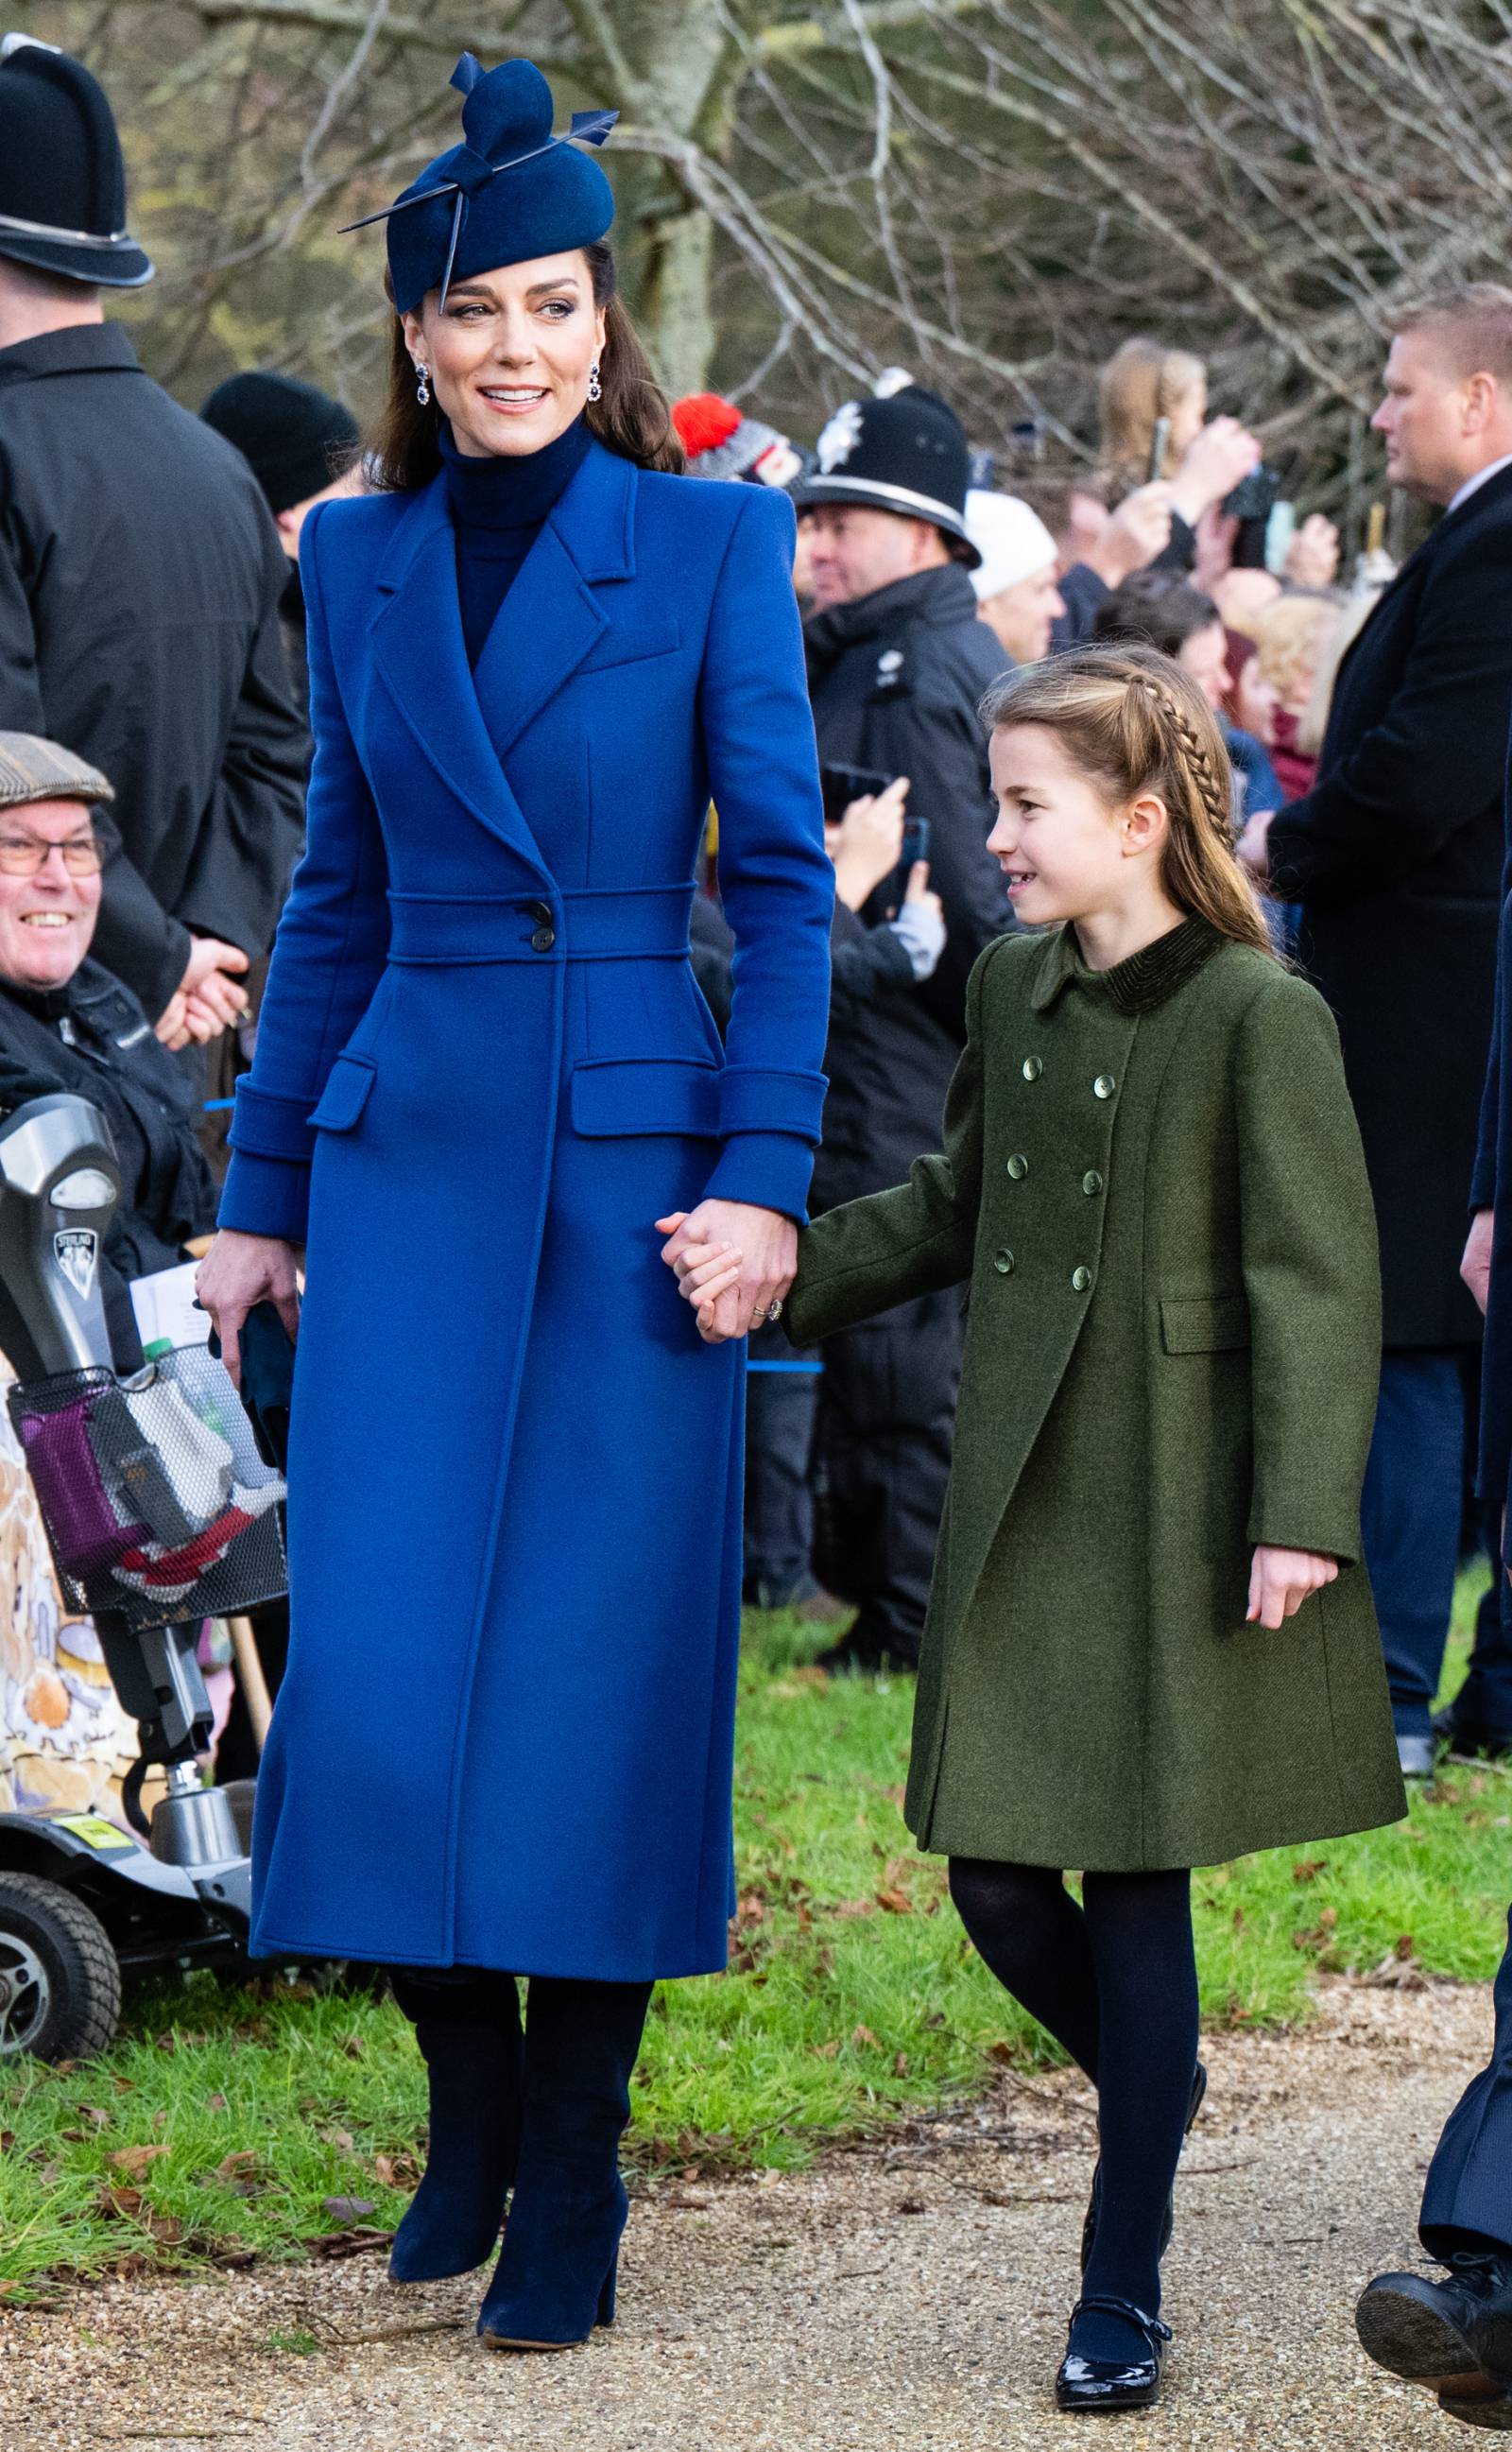 Księżna Kate w kobaltowym płaszczu podczas bożonarodzeniowego spaceru (Fot. Samir Hussein/WireImage / Getty Images)